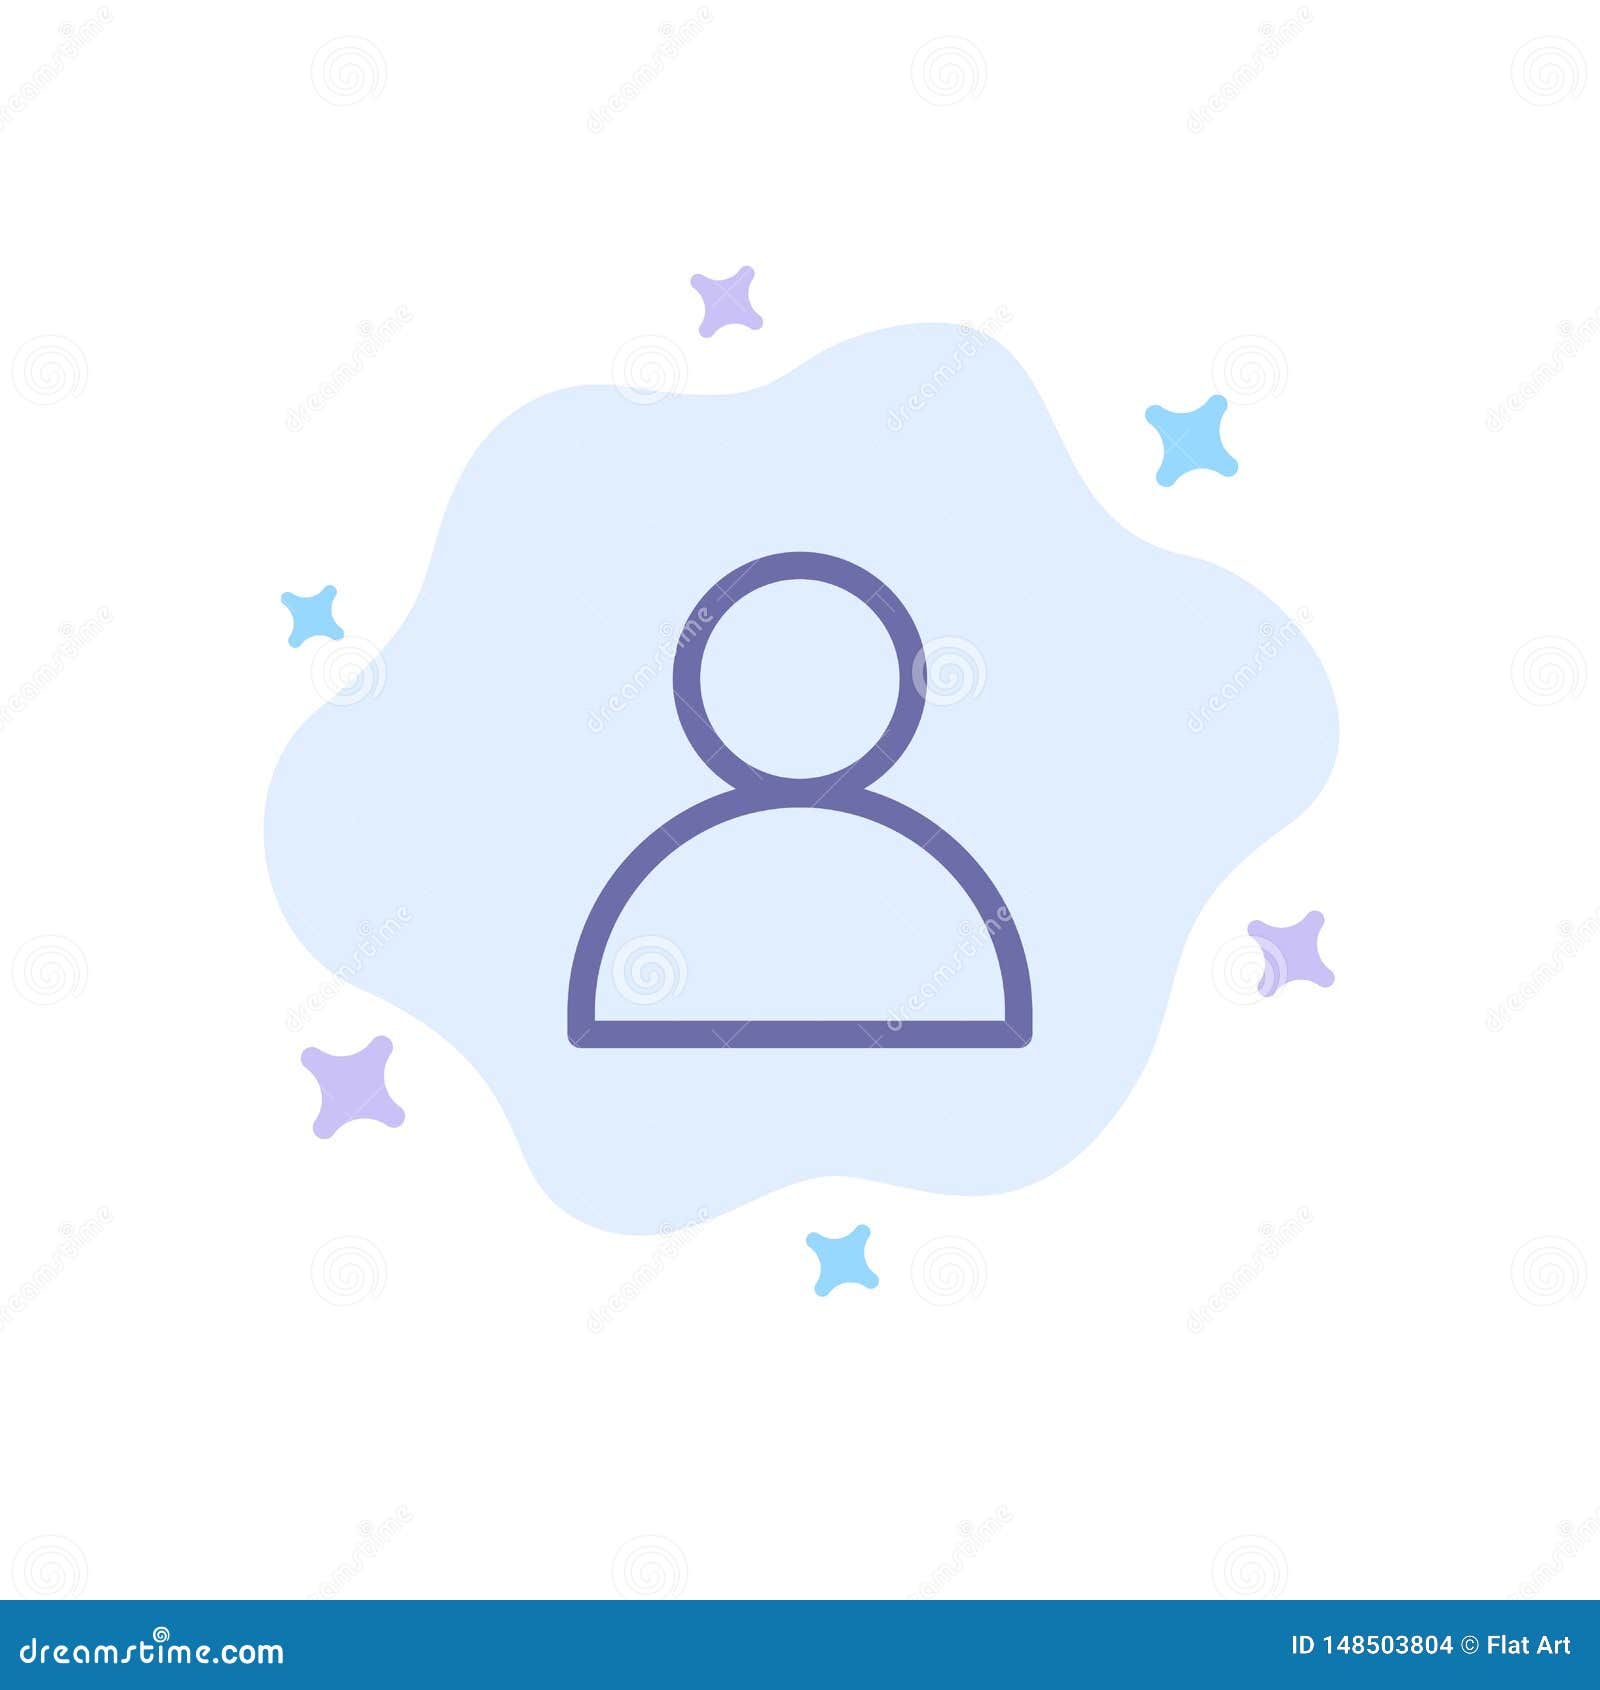 Biểu tượng Twitter màu xanh có thể giúp trang web của bạn trông chuyên nghiệp hơn và tạo nên cảm giác tin cậy cho khách hàng. Hãy tham khảo hình ảnh liên quan để tìm hiểu cách tích hợp biểu tượng này vào trang web của bạn.